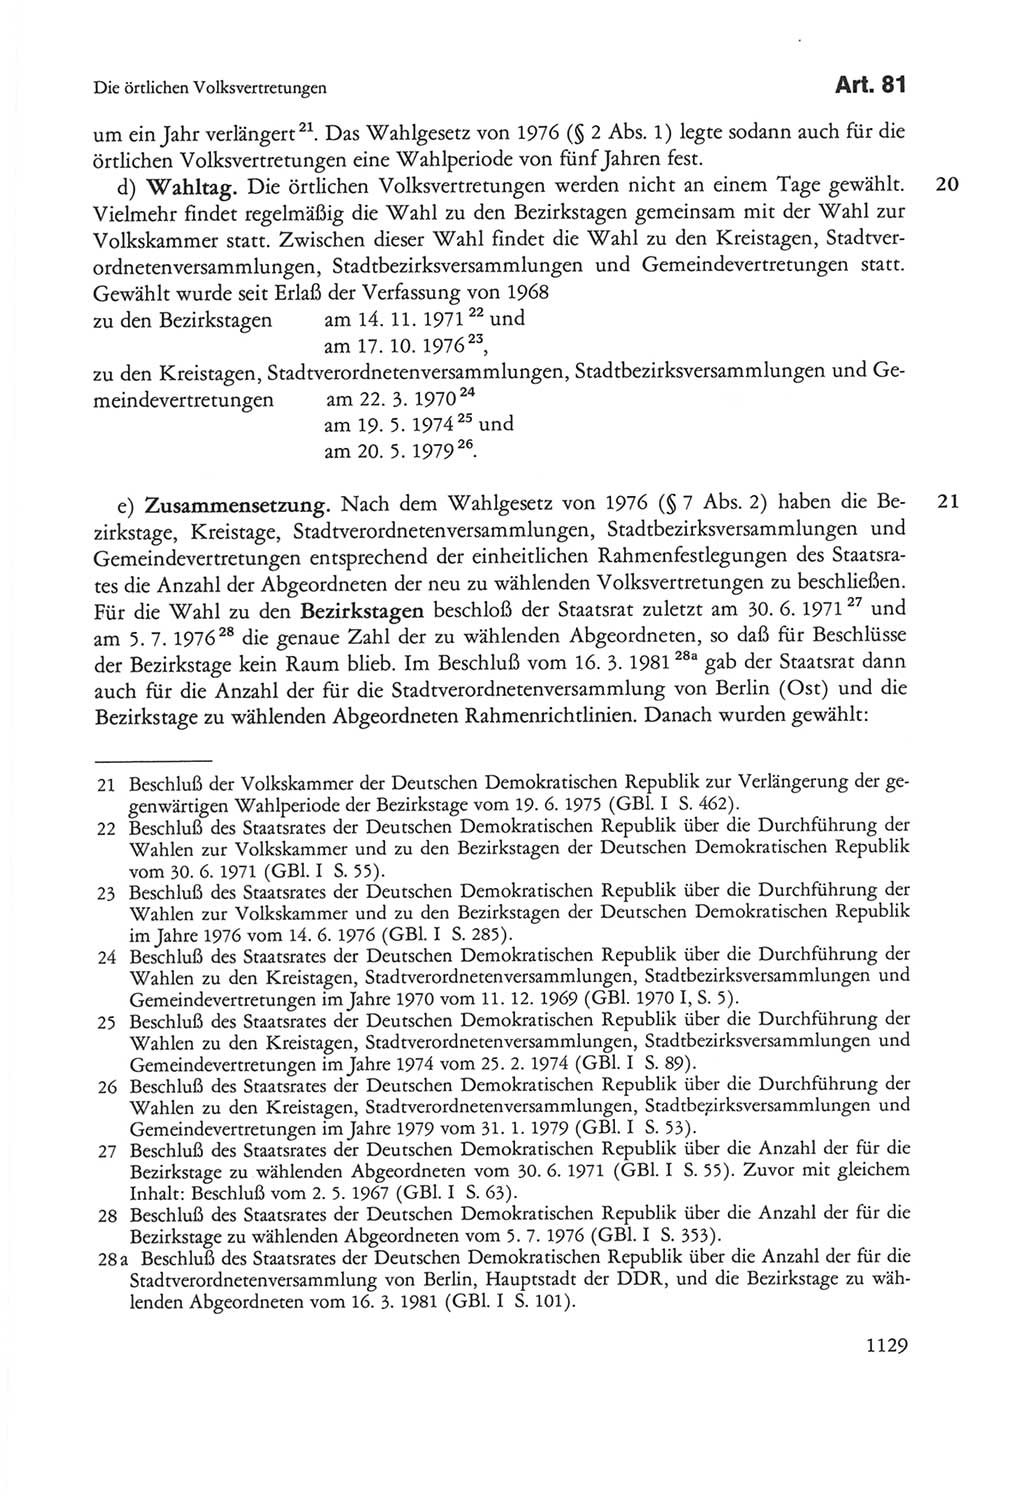 Die sozialistische Verfassung der Deutschen Demokratischen Republik (DDR), Kommentar mit einem Nachtrag 1997, Seite 1129 (Soz. Verf. DDR Komm. Nachtr. 1997, S. 1129)